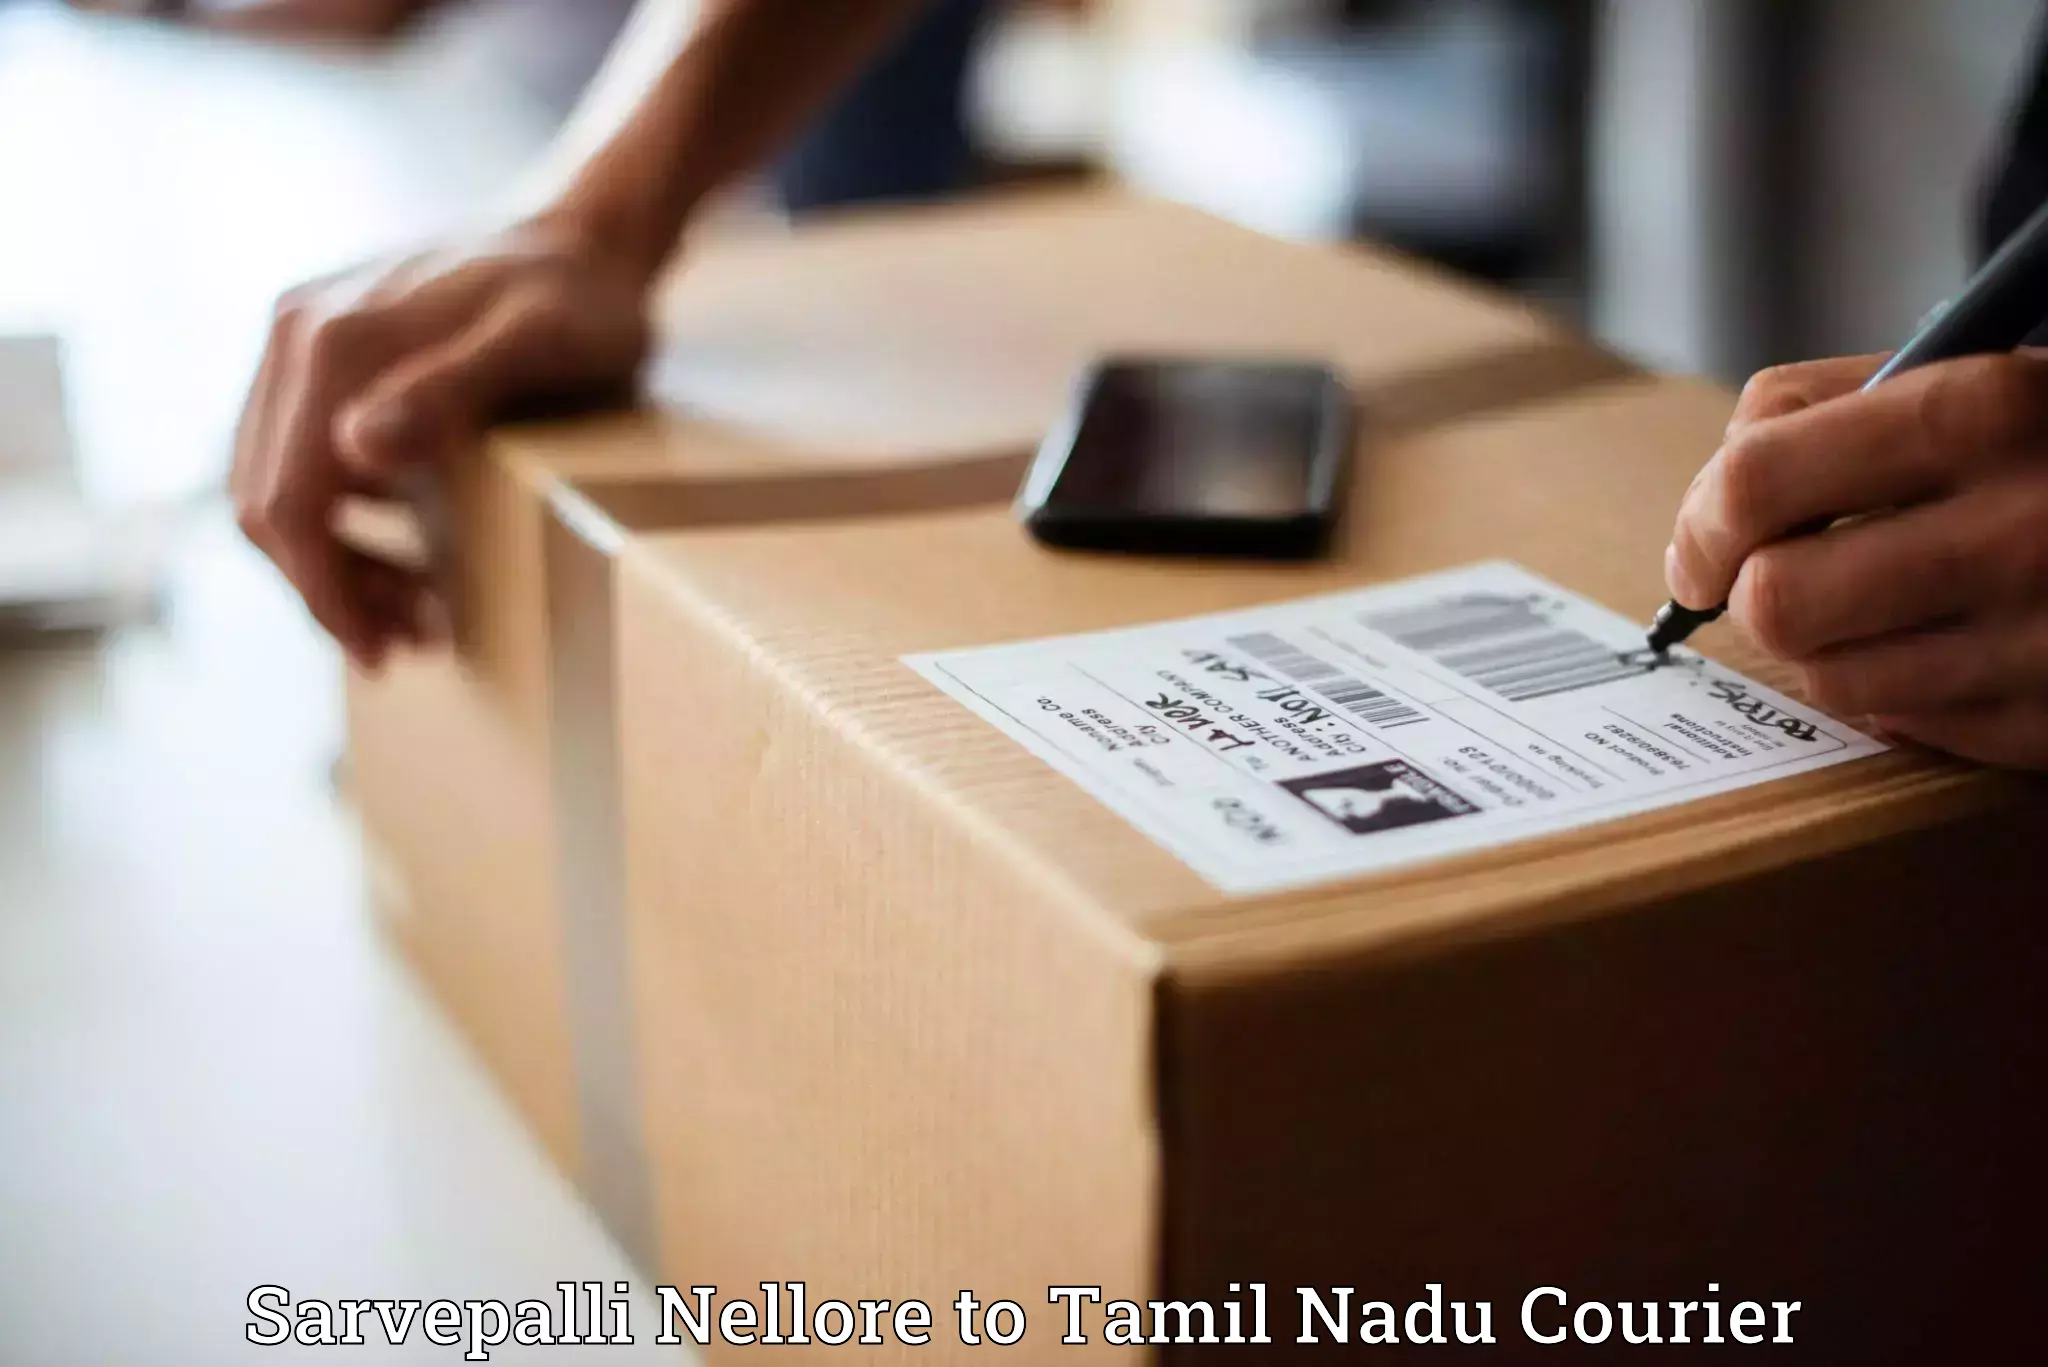 Cash on delivery service Sarvepalli Nellore to Tamil Nadu